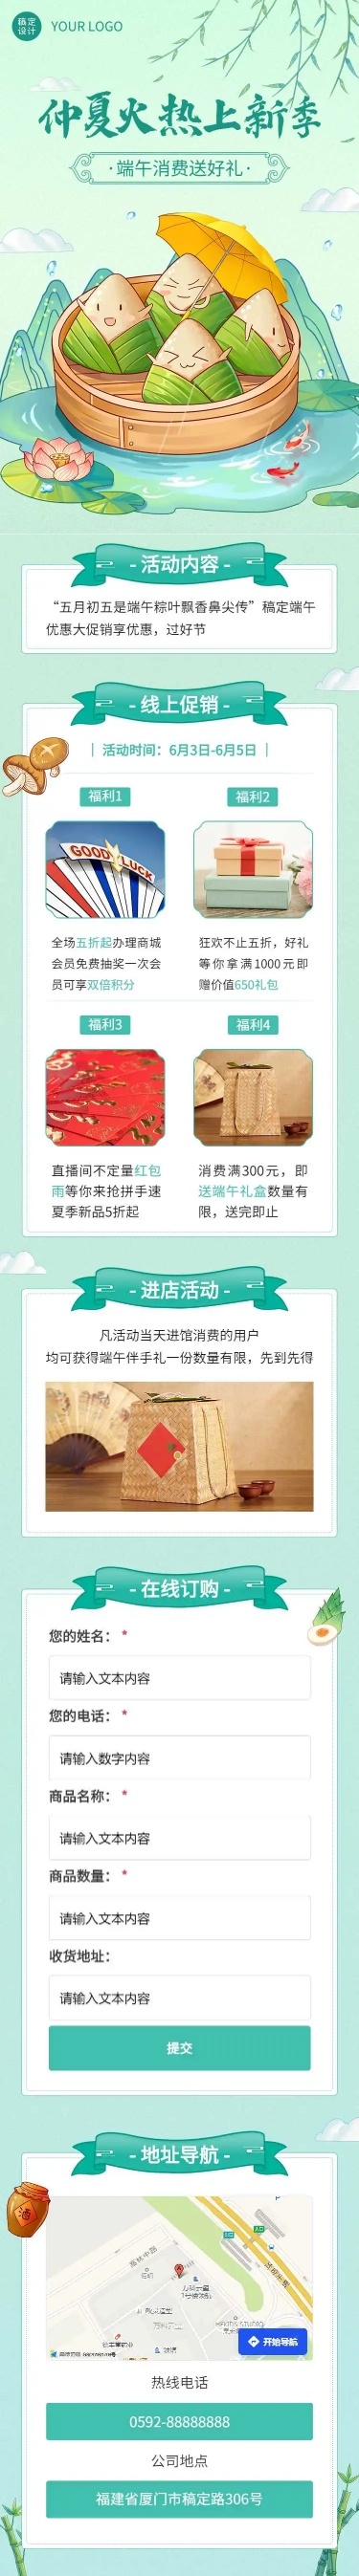 长页H5端午节粽子产品促销活动